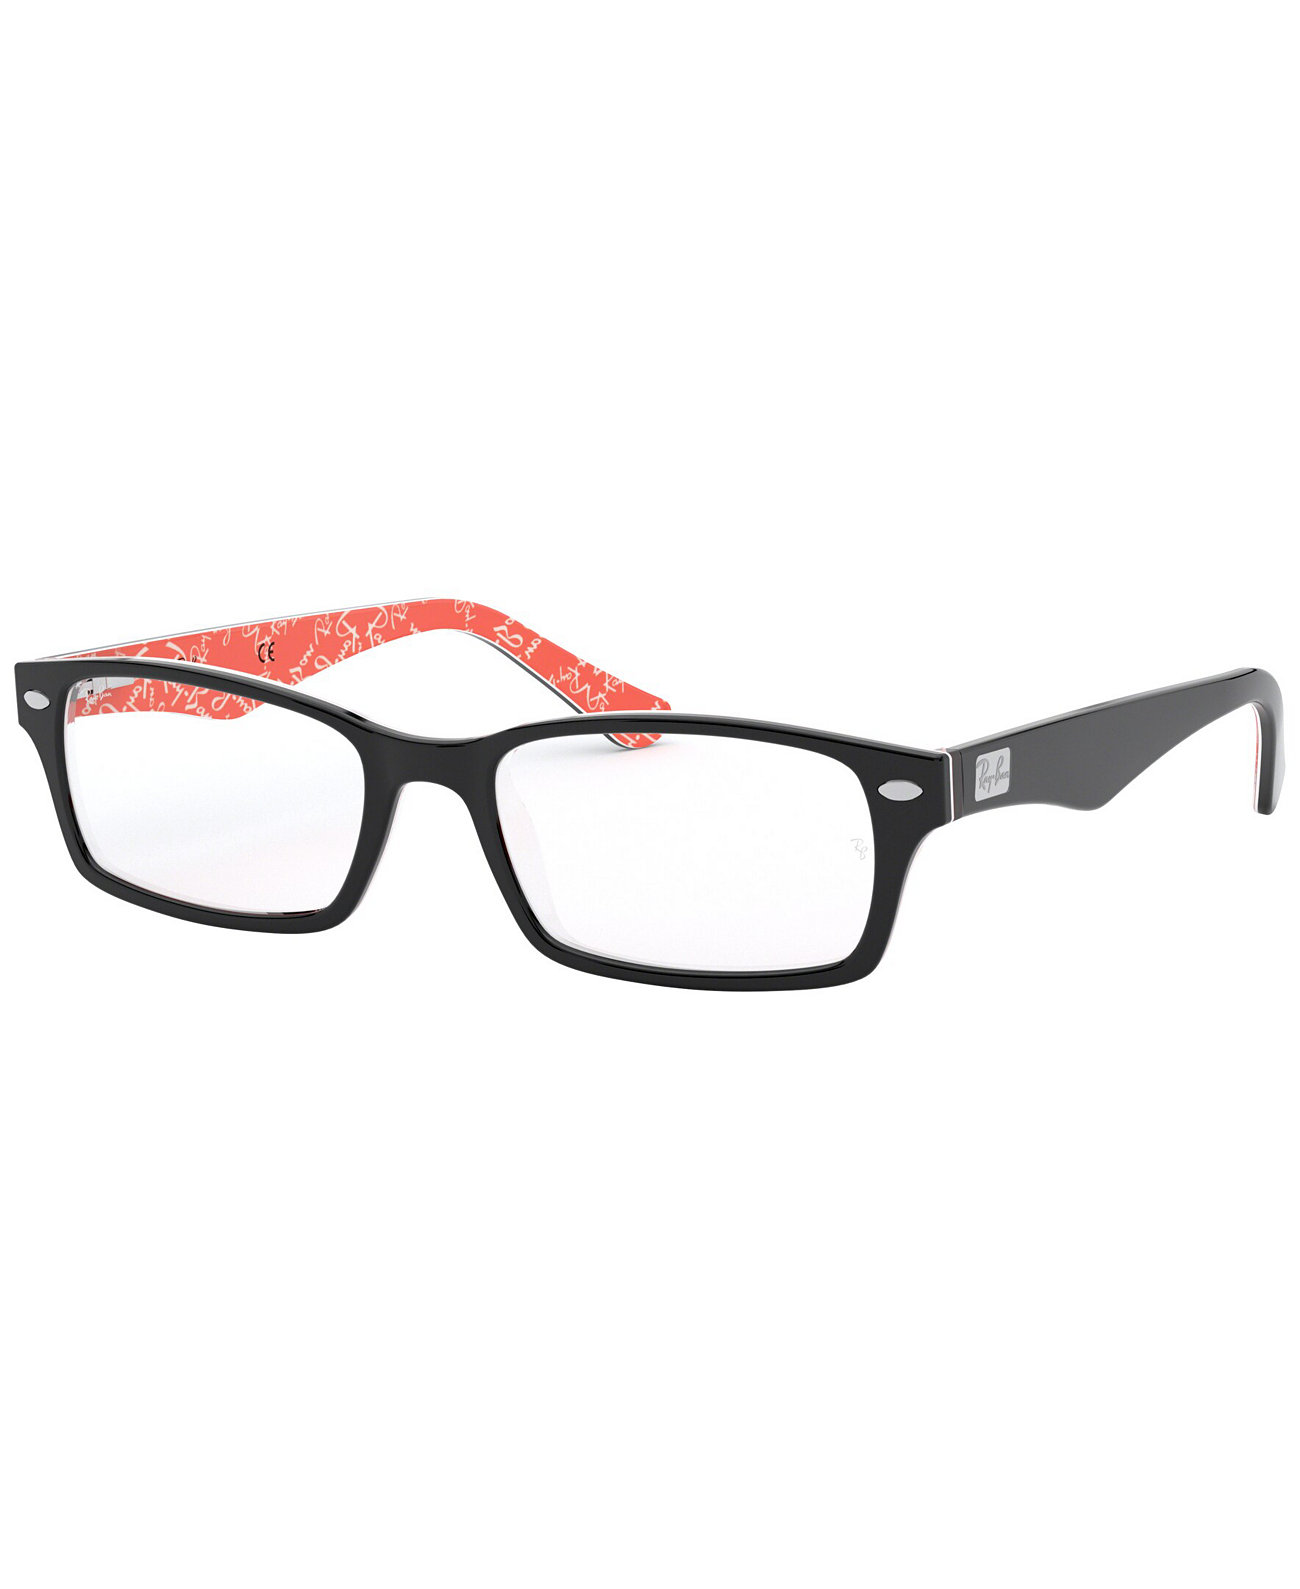 Прямоугольные очки унисекс RX5206 Ray-Ban